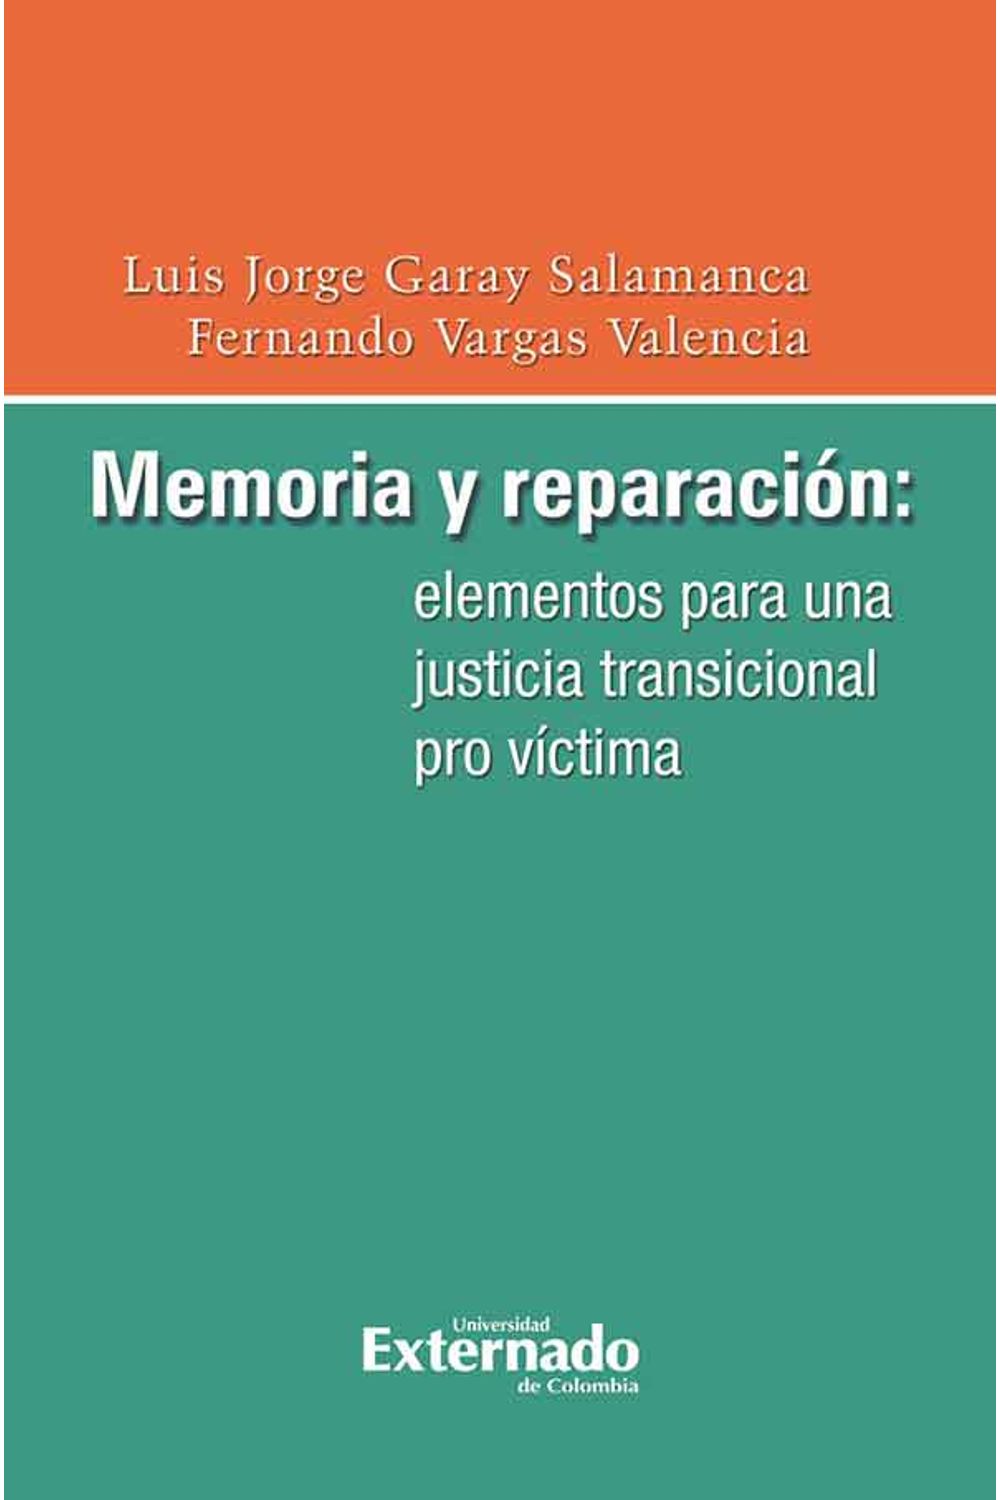 bw-memoria-y-reparacioacuten-elementos-para-una-justicia-transicional-pro-viacutectima-u-externado-de-colombia-9789587720006